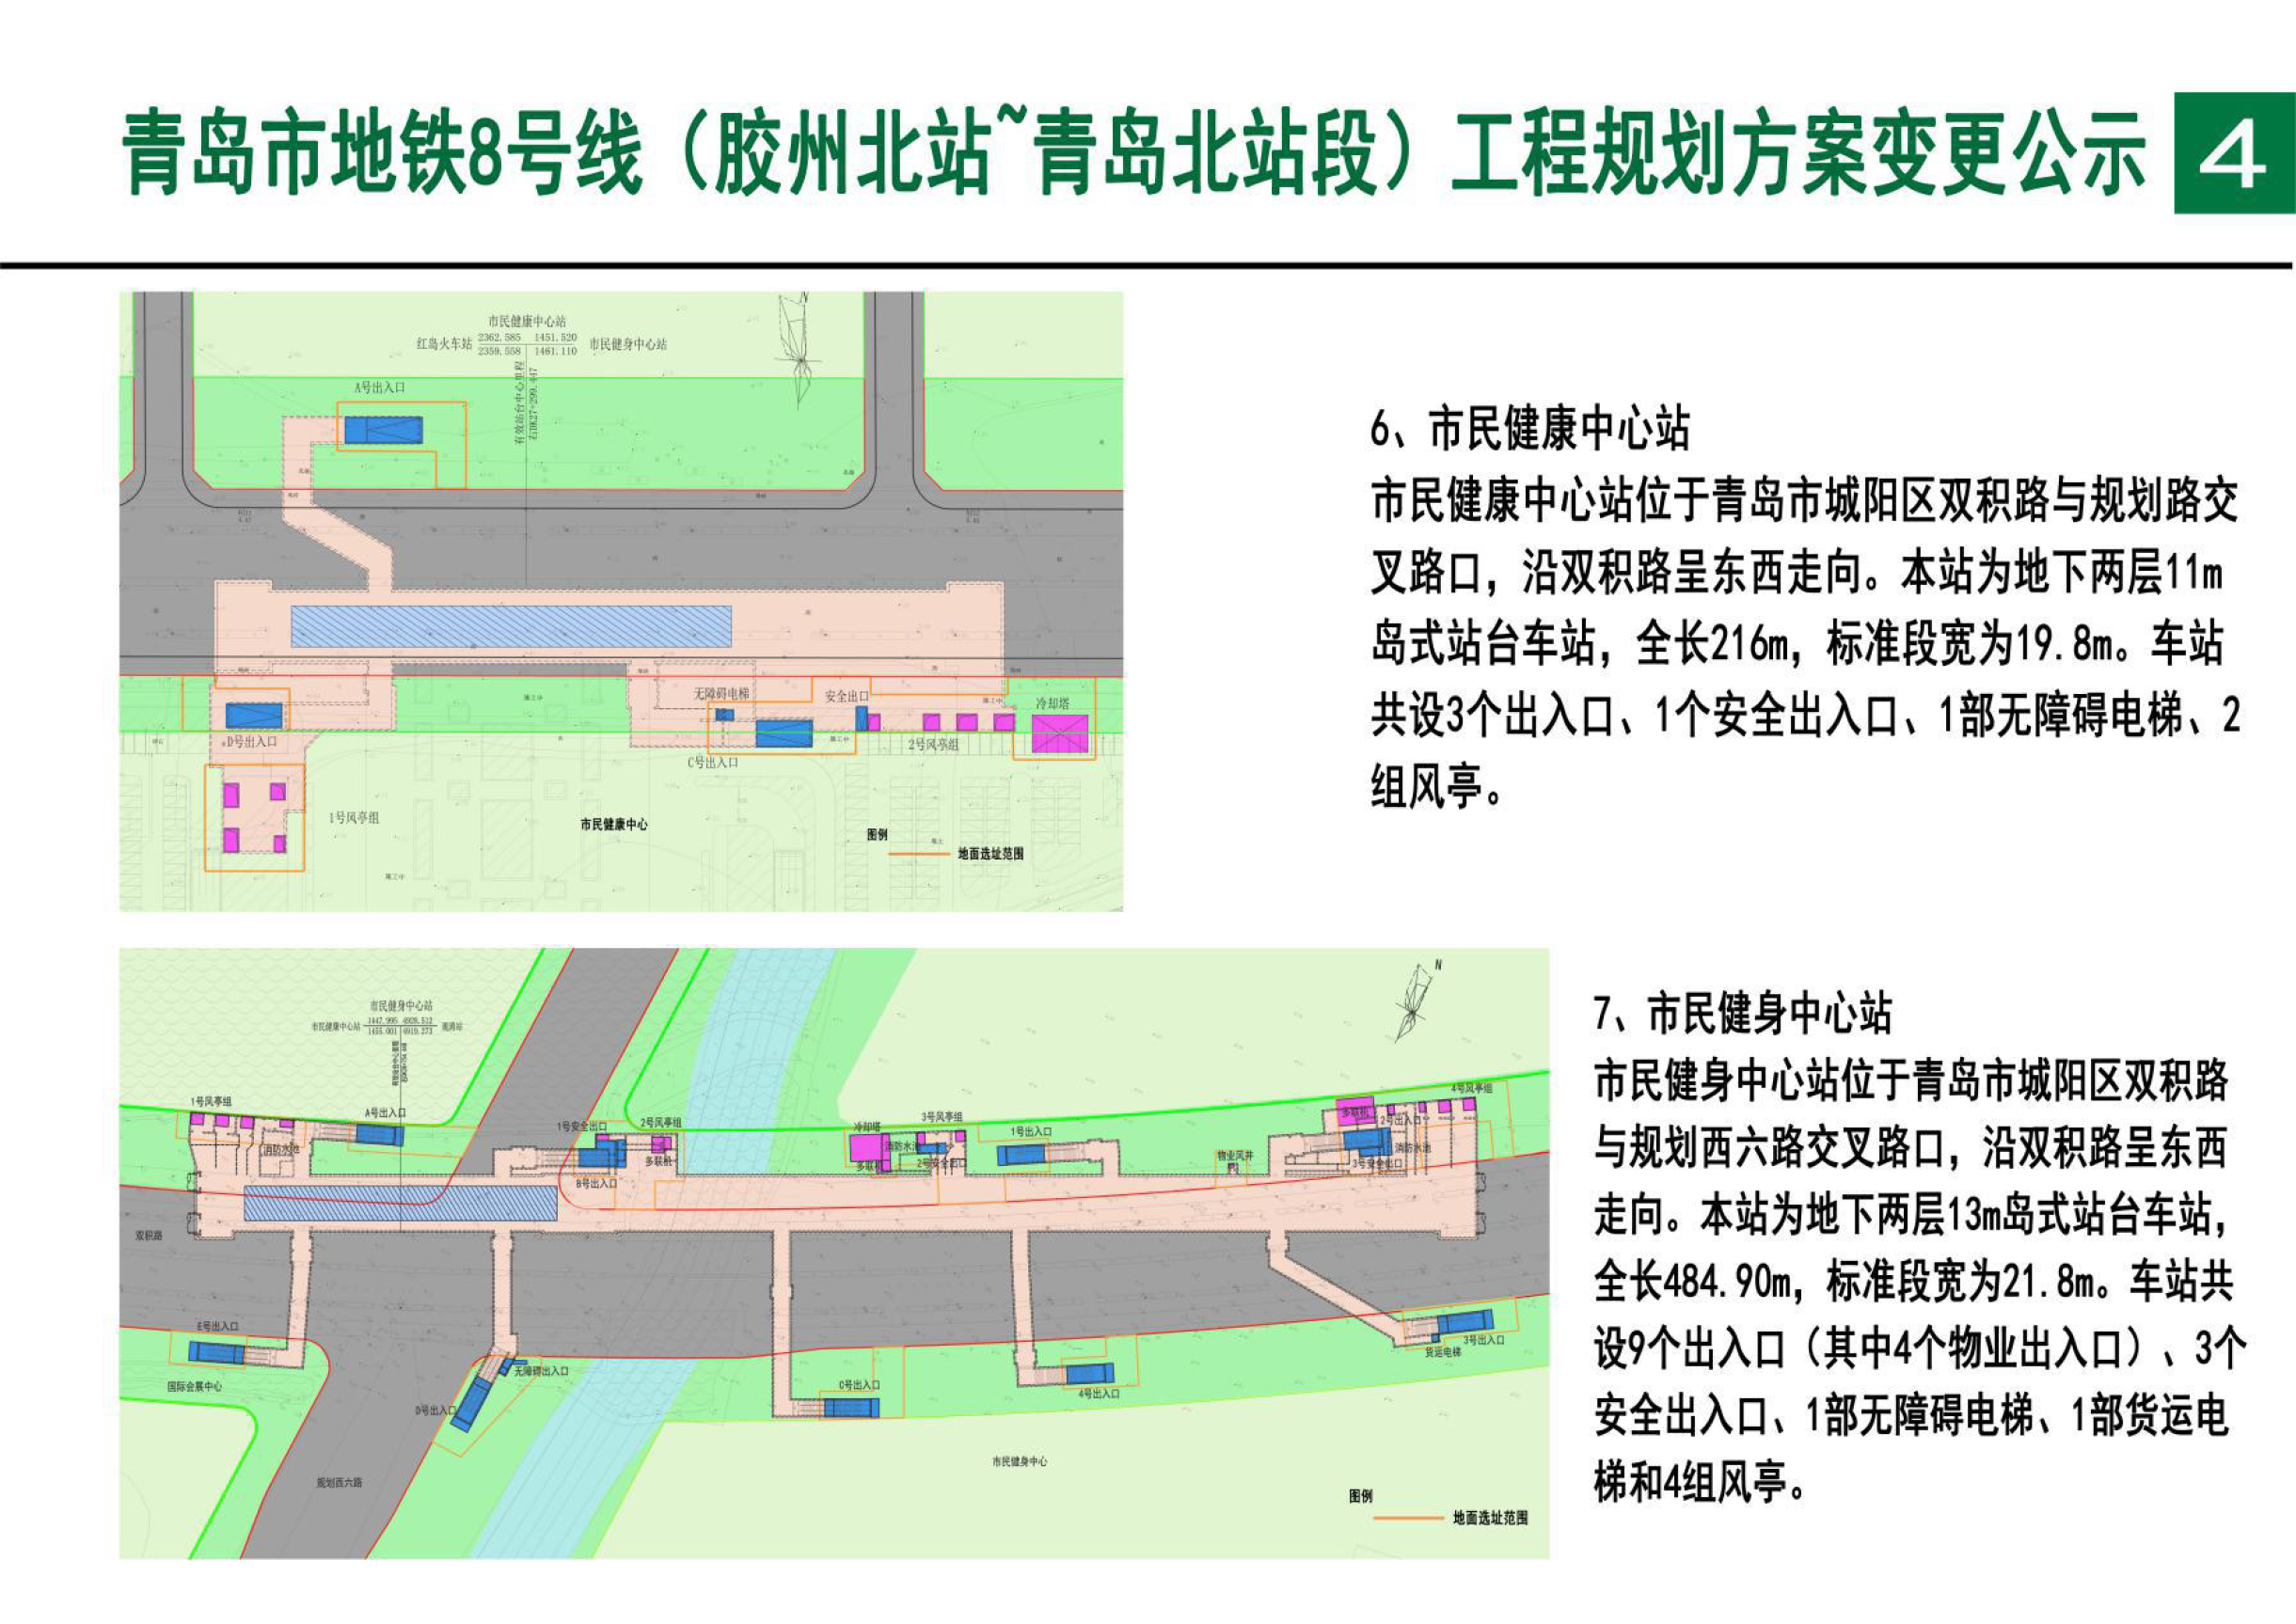 青岛市地铁8号线北段(胶州北站-青岛北站)工程规划方案变更公示